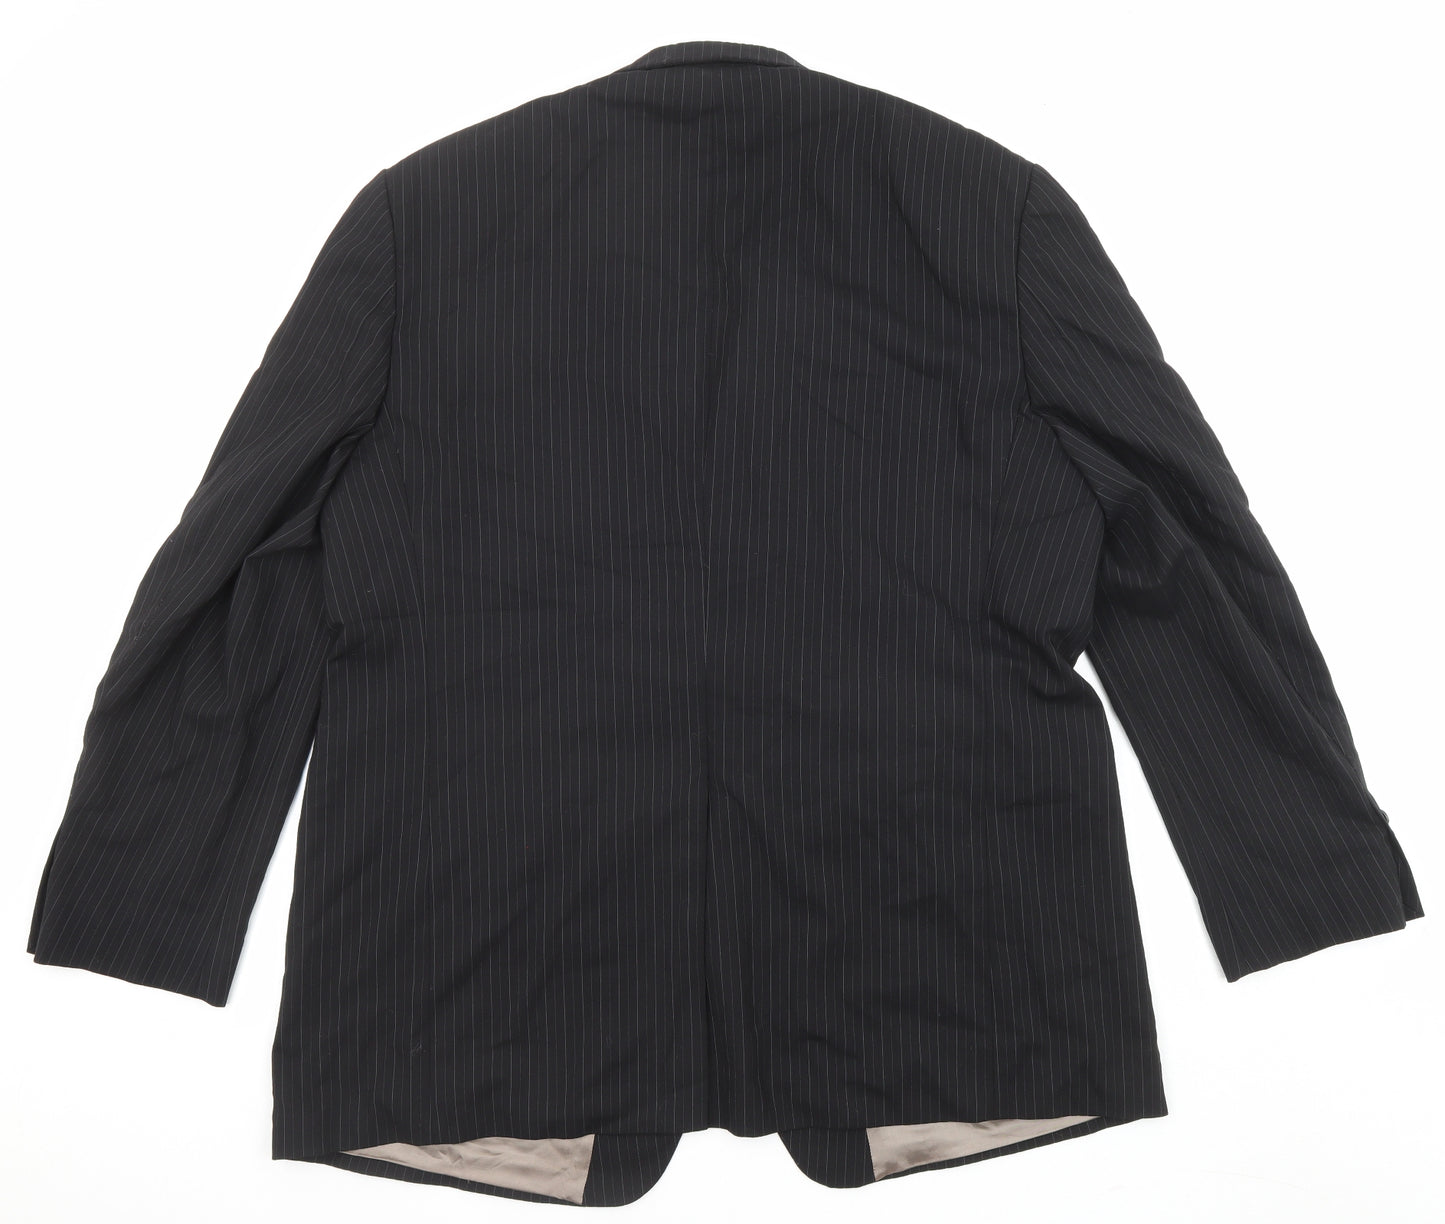 Marks and Spencer Mens Black Striped Wool Jacket Suit Jacket Size 48 Regular